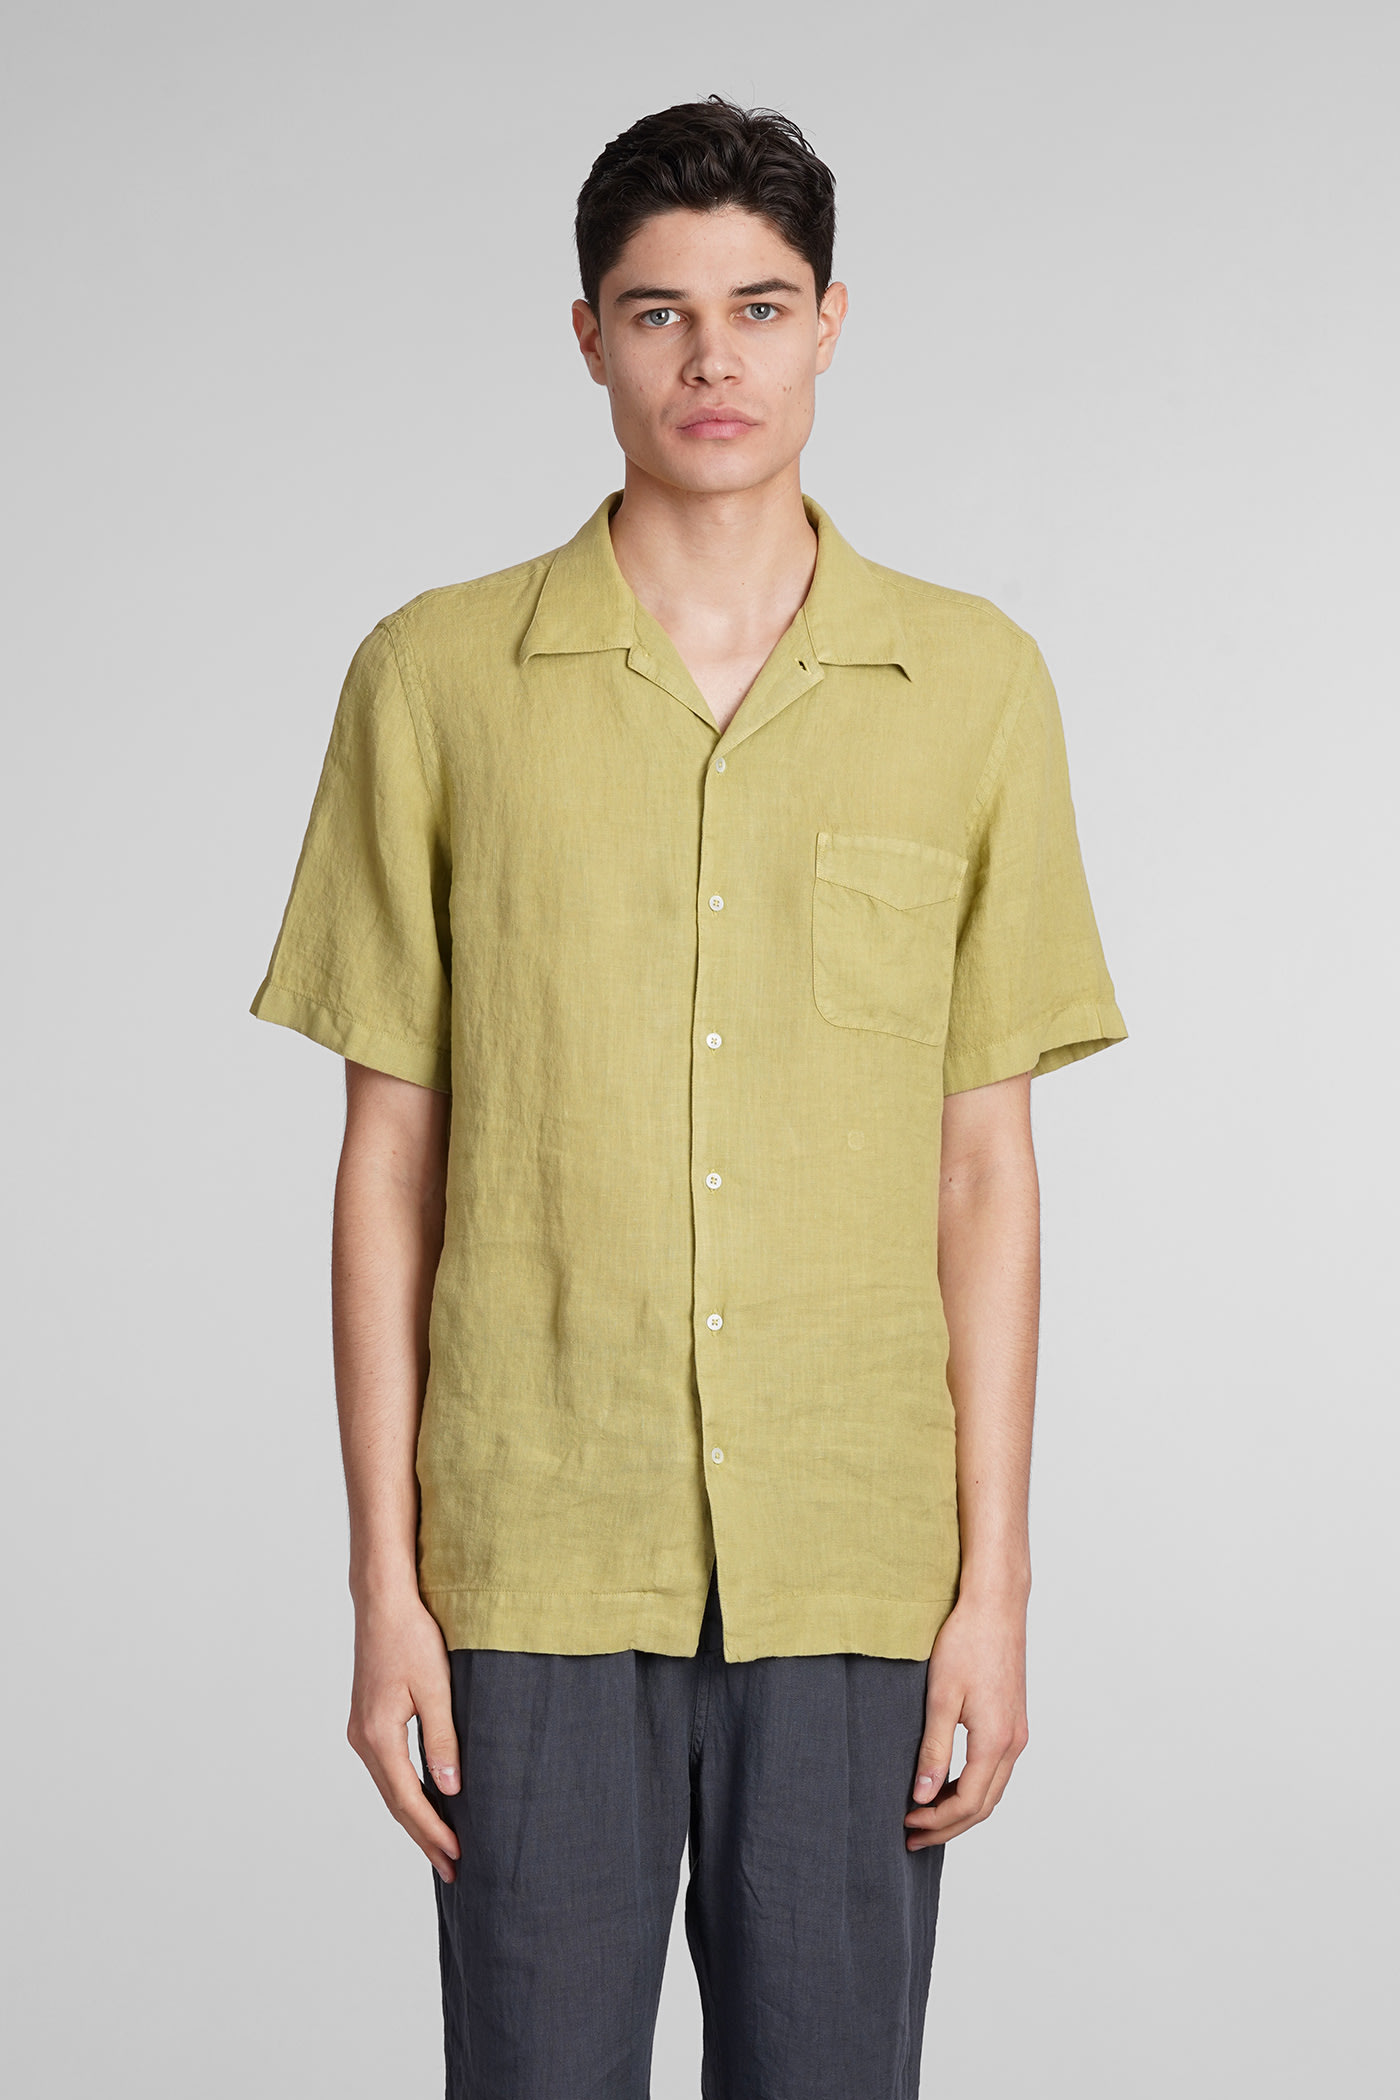 Venice Shirt In Green Linen